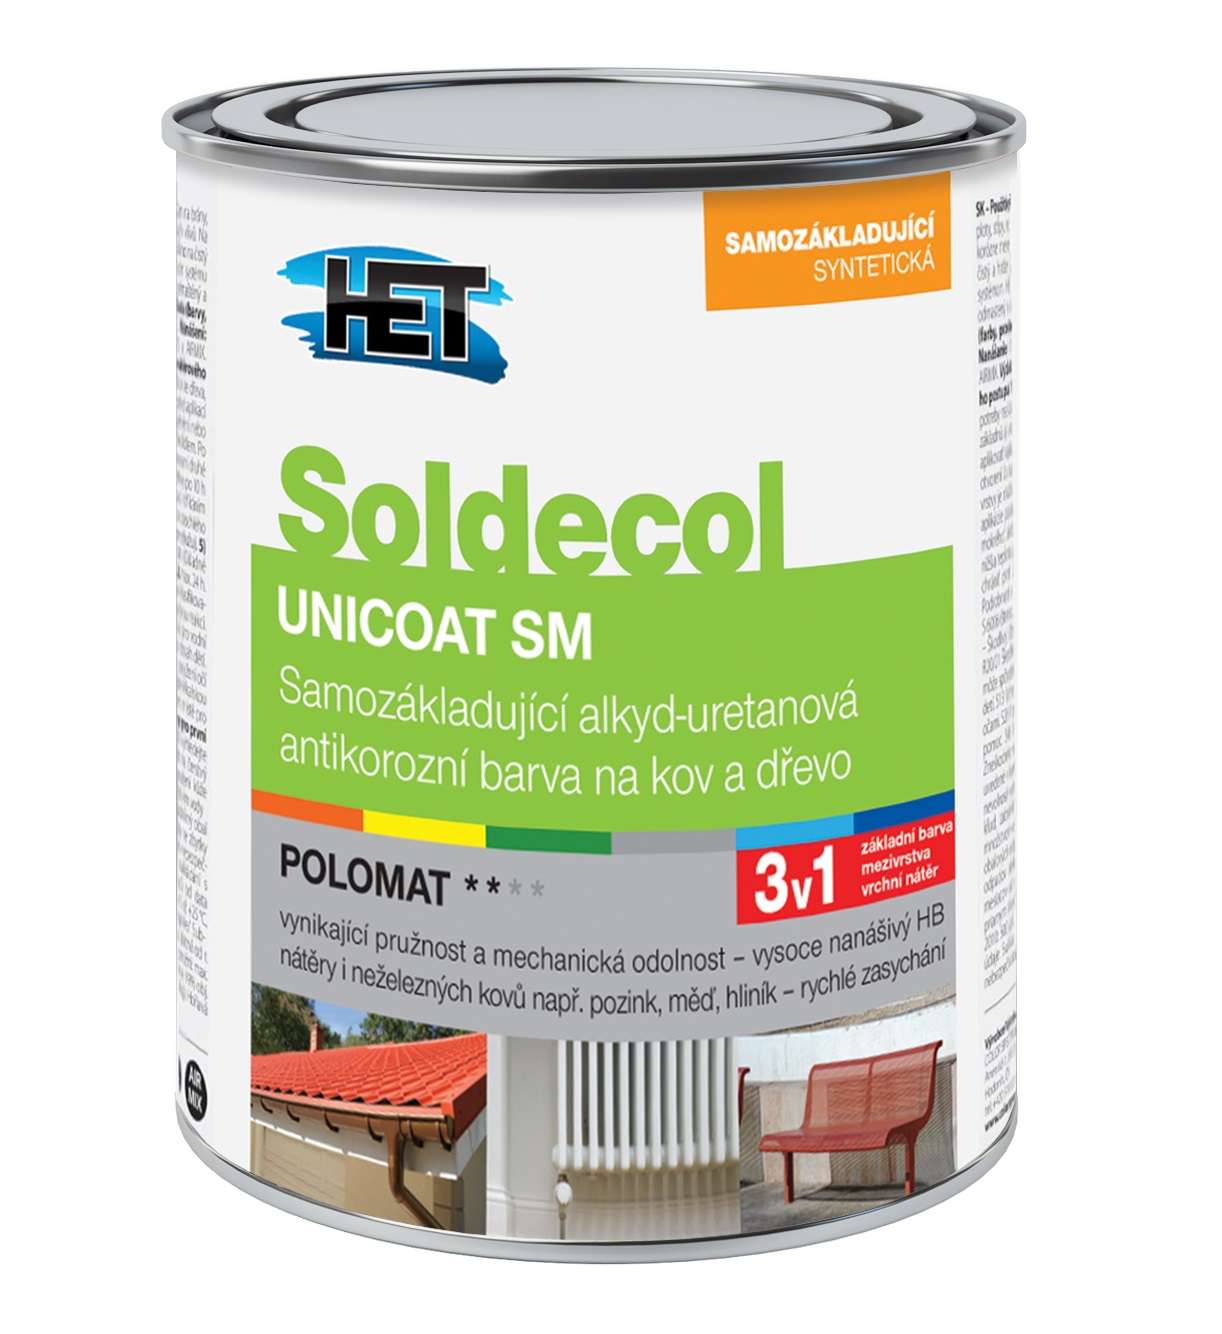 Het Báze Soldecol Unicoat SM * Samozákladující alkyd-uretanová polomatná antikorozní barva na kov a dřevo. 1